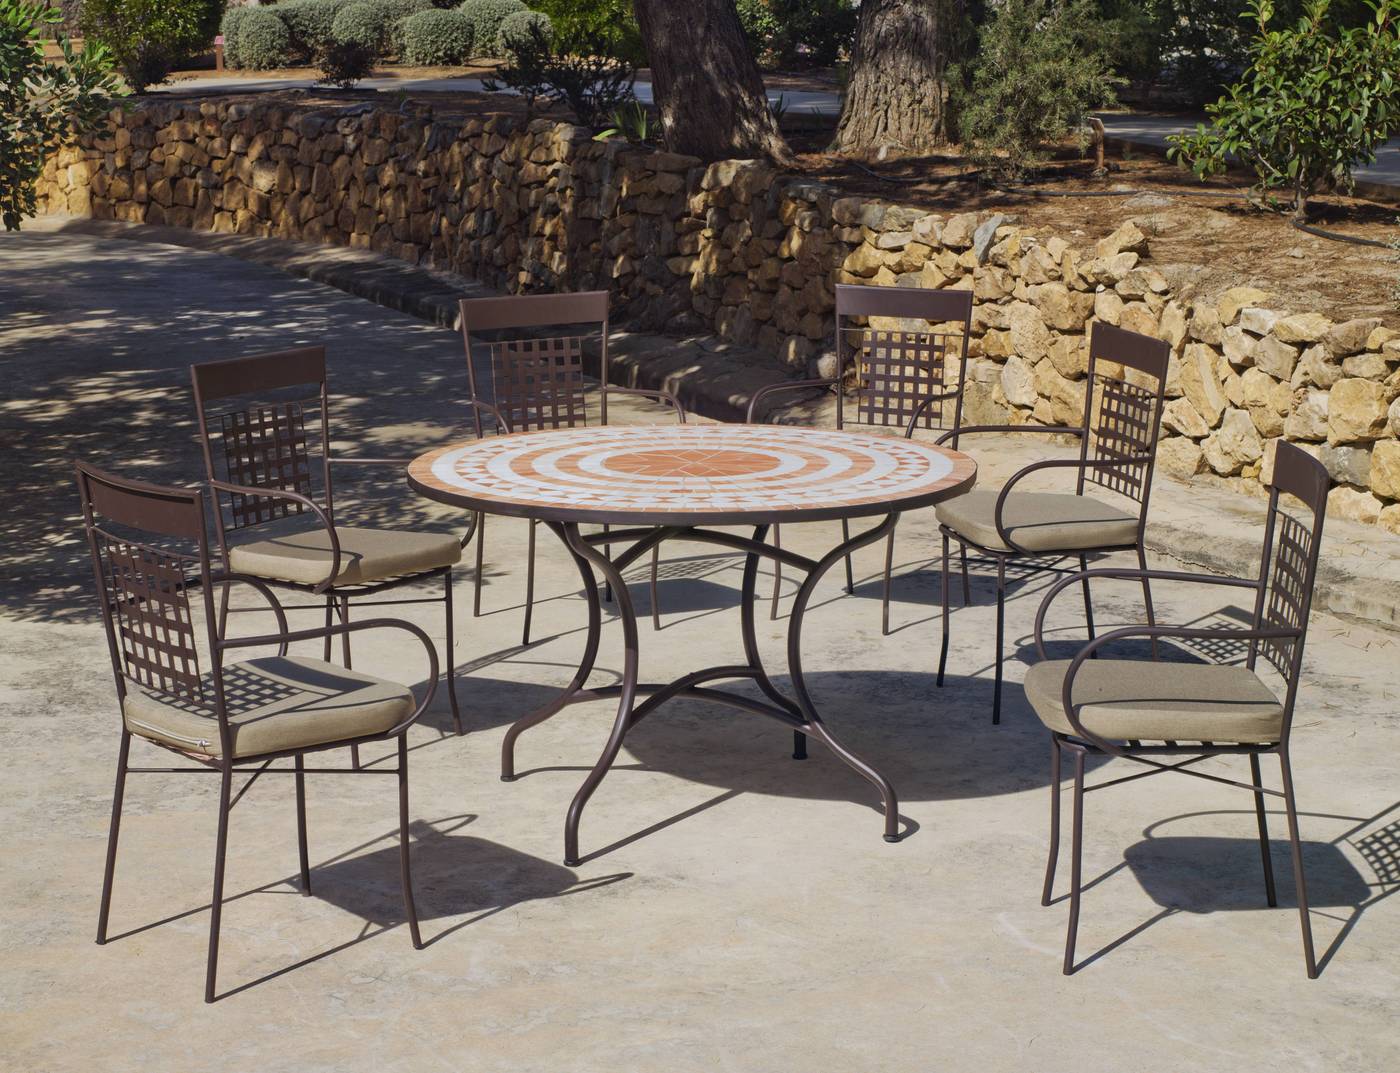 Conjunto de forja color bronce: mesa redonda de acero forjado, con tablero mosaico de 120 cm. + 6 sillones con cojines